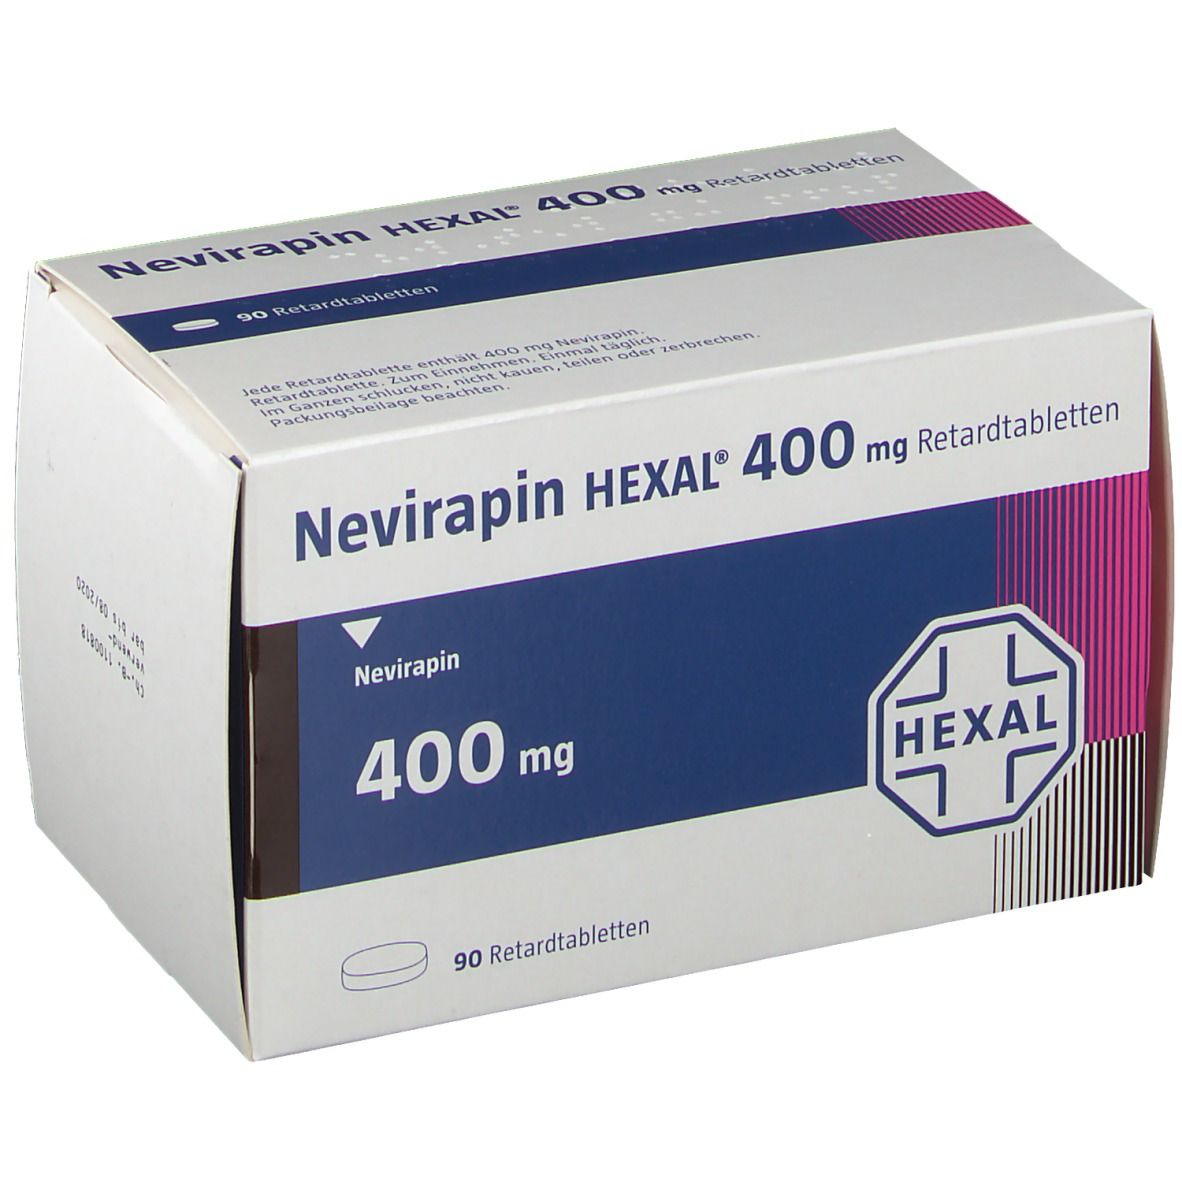 Nevirapin HEXAL® 400 mg